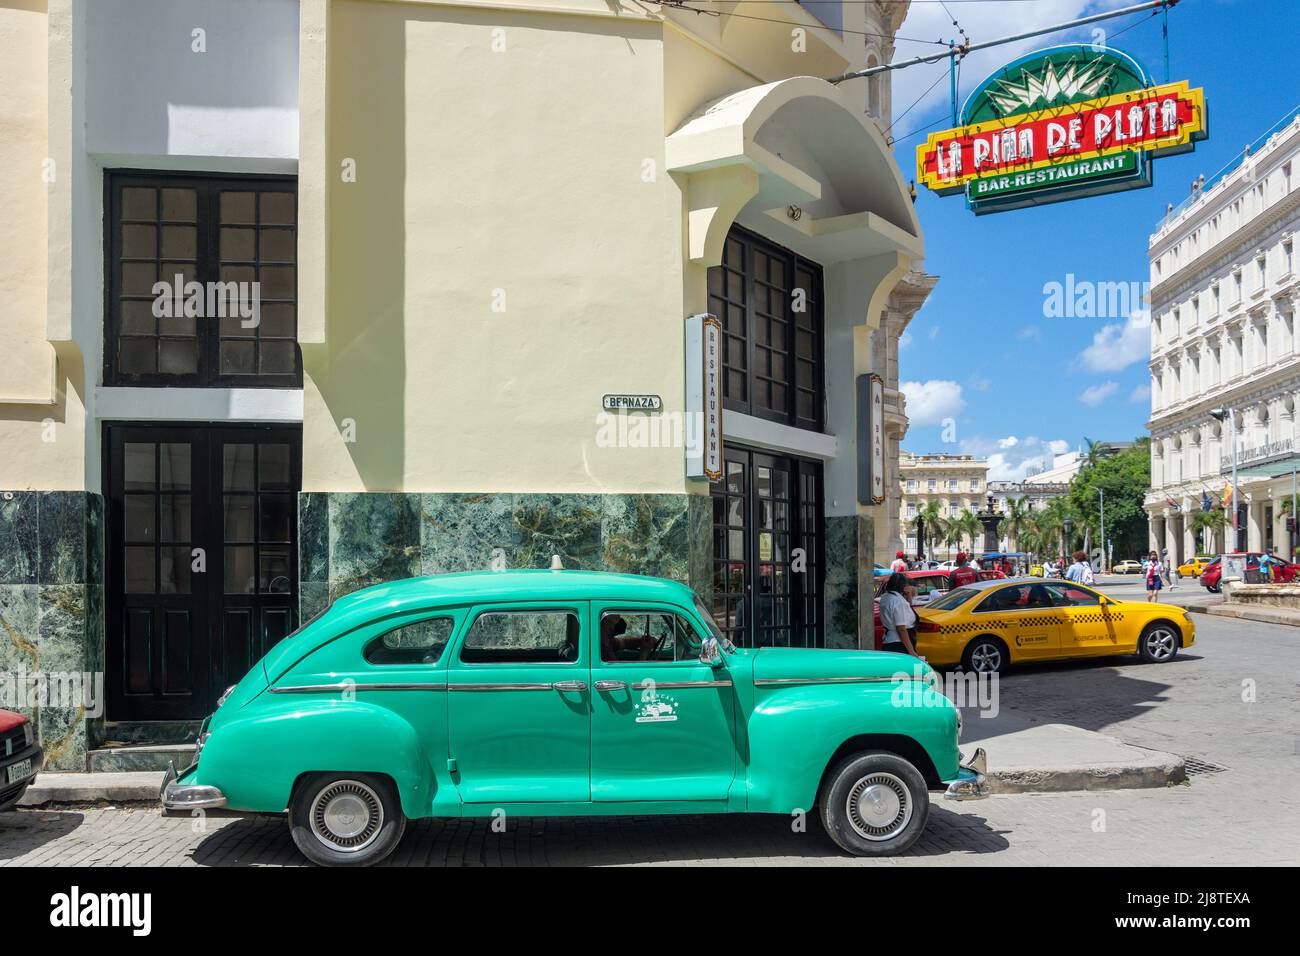 Bar et restaurant la piña de plata, Calle del Obispo, la Vieille Havane, la Havane, la Habana, République de Cuba Banque D'Images